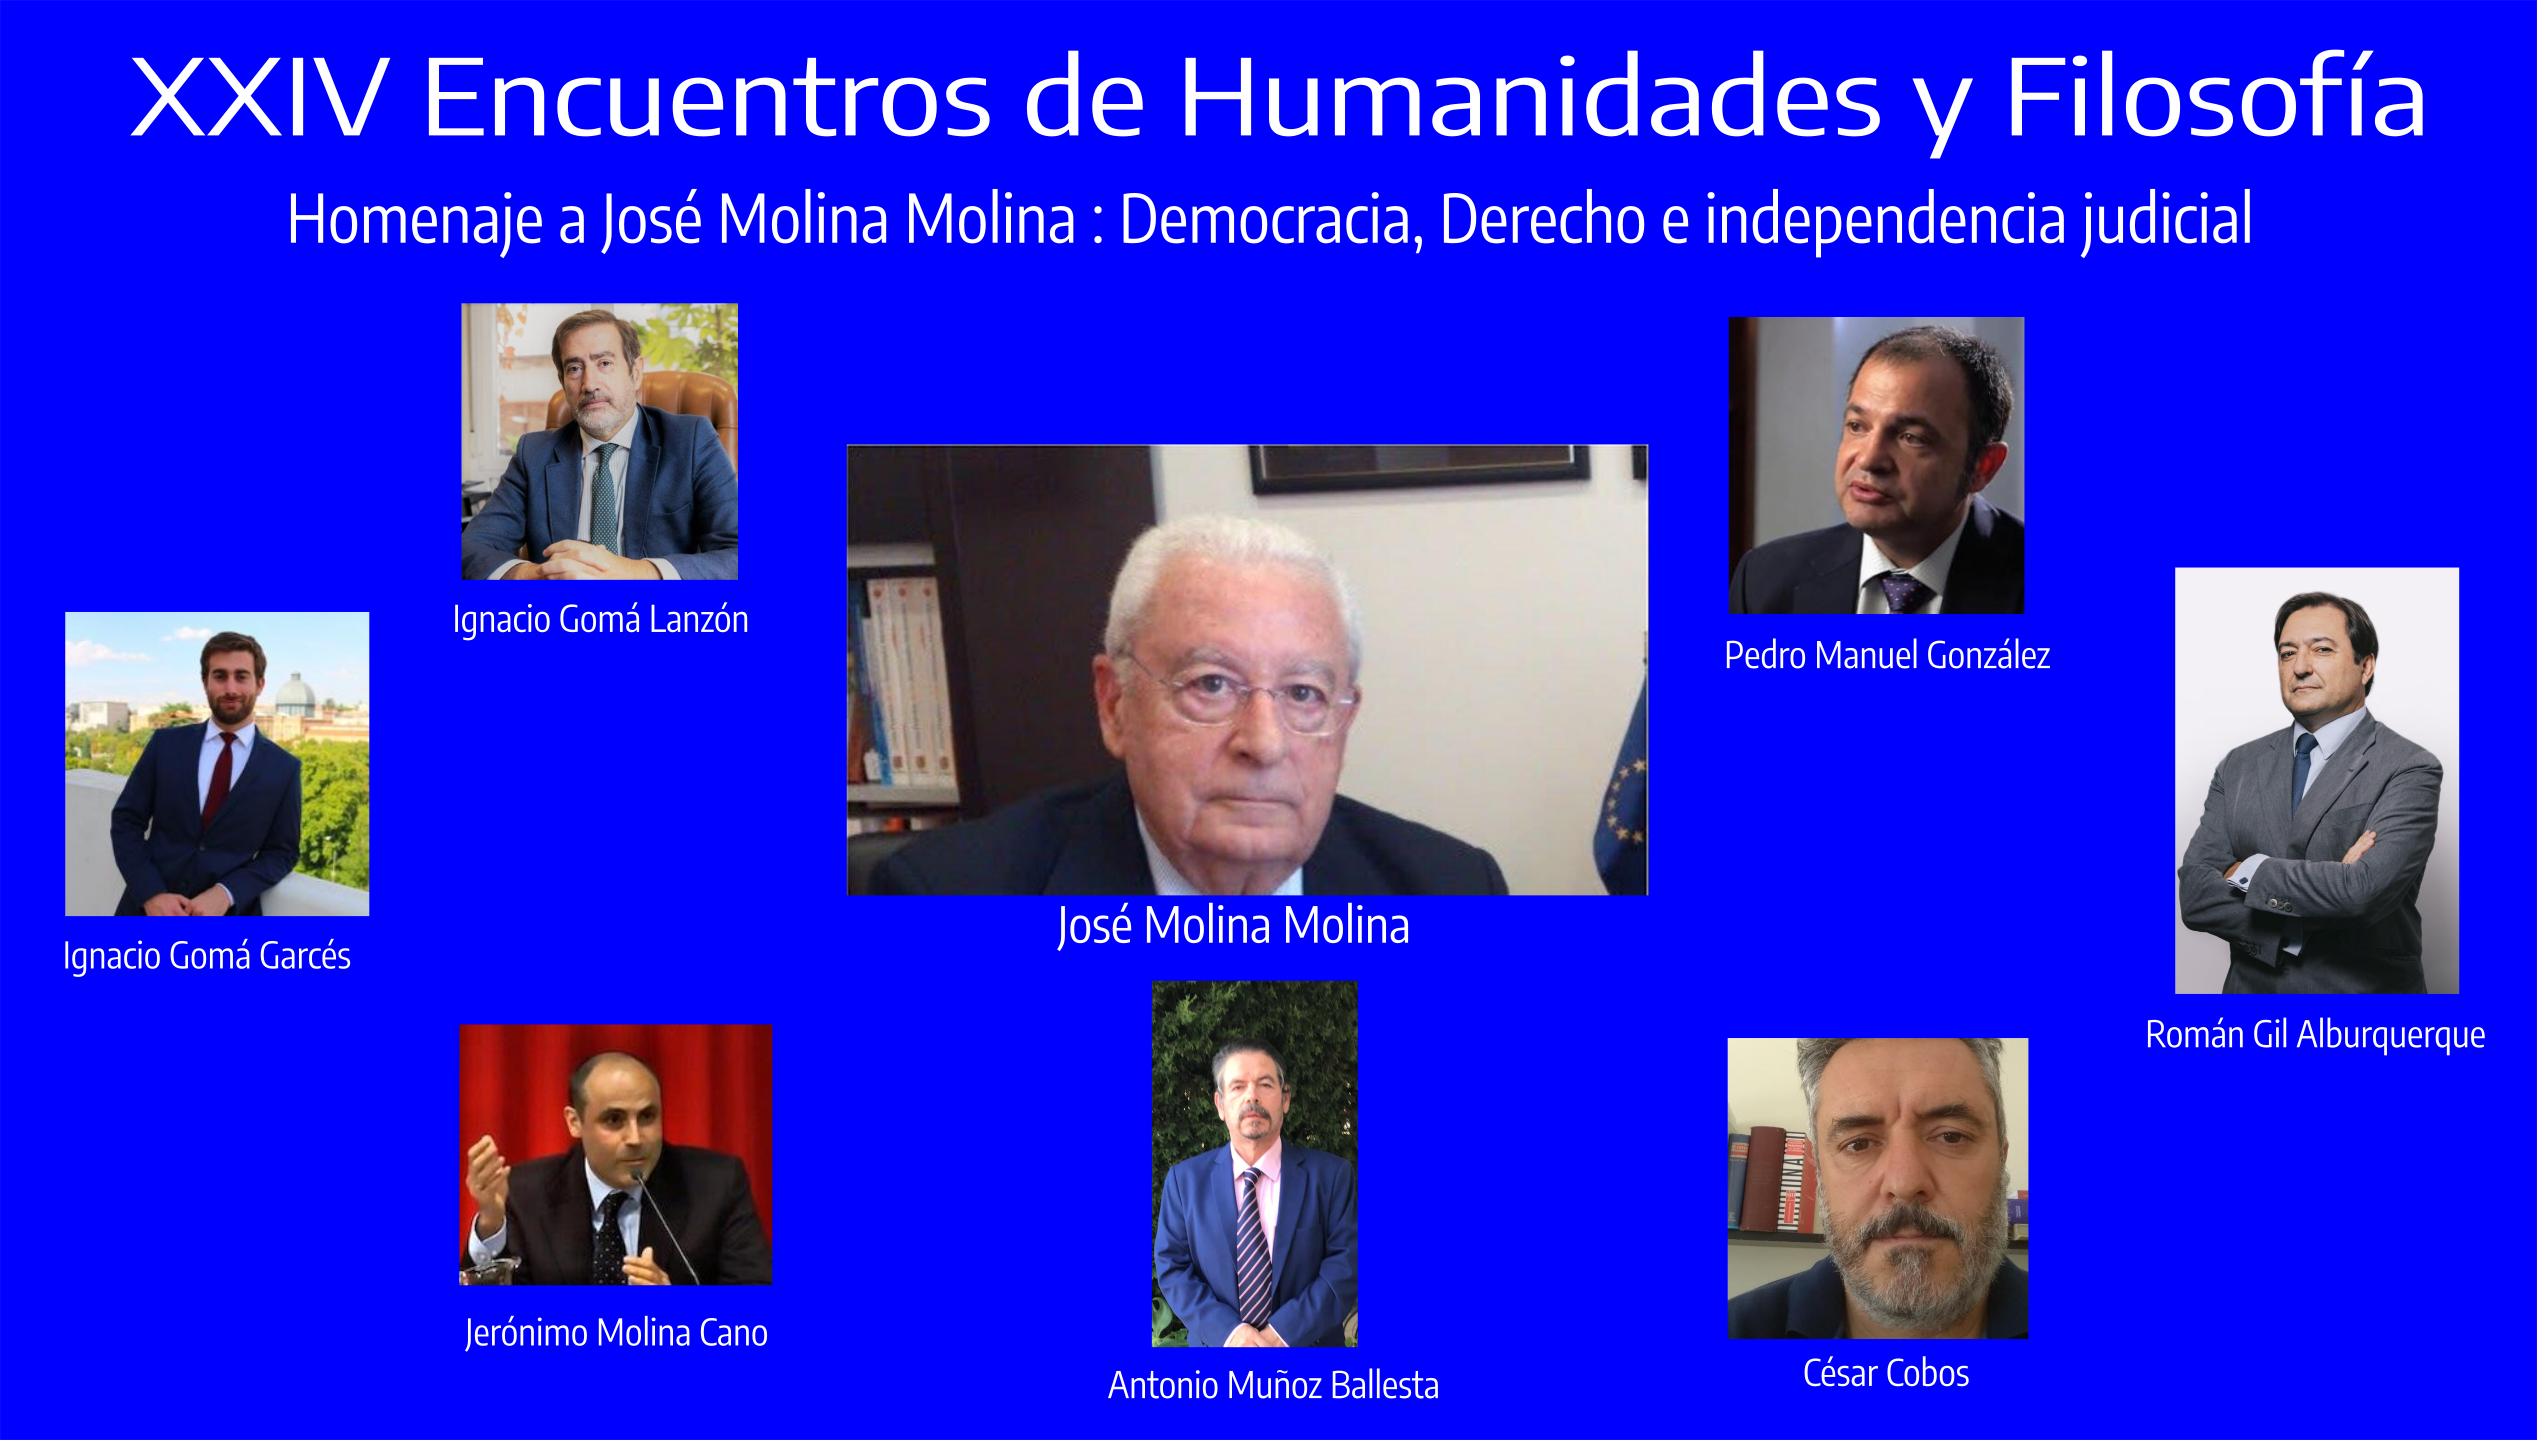 XXIV Encuentros de Humanidades y Filosfofía, Homenaje a José Molina Molina : Democracia, Derecho e independencia judicial